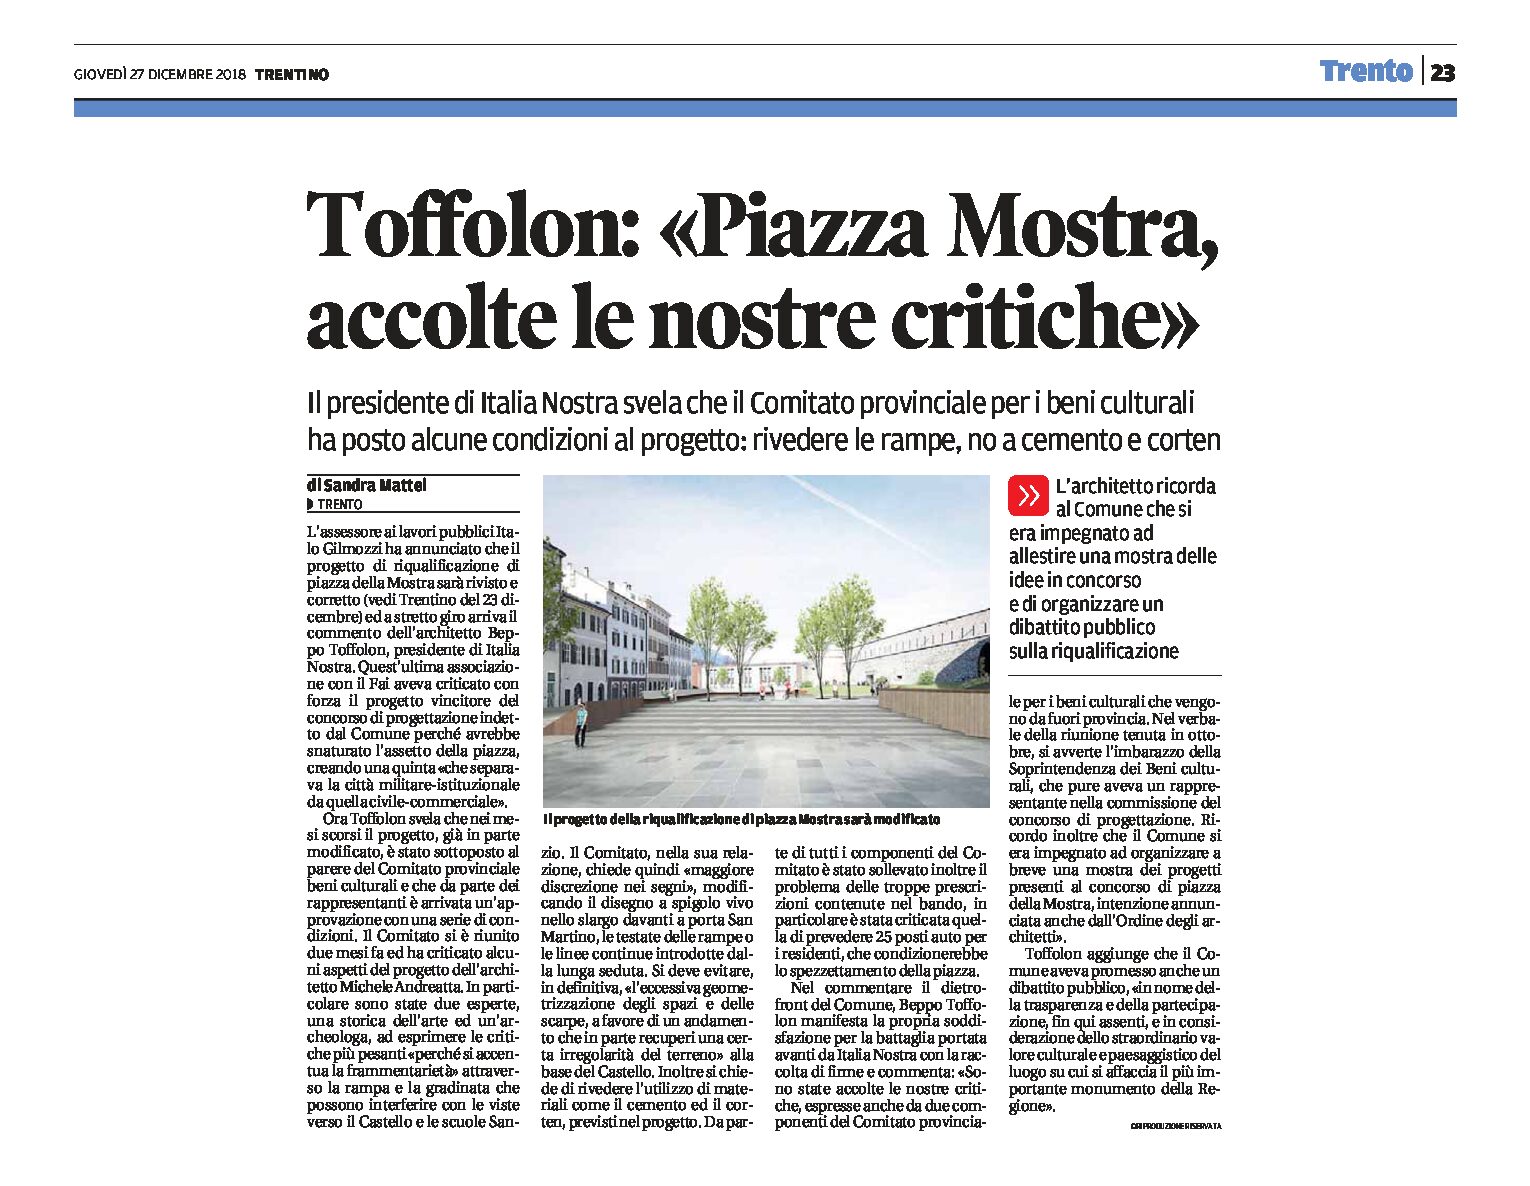 Trento, piazza Mostra: Toffolon “accolte le nostre critiche”